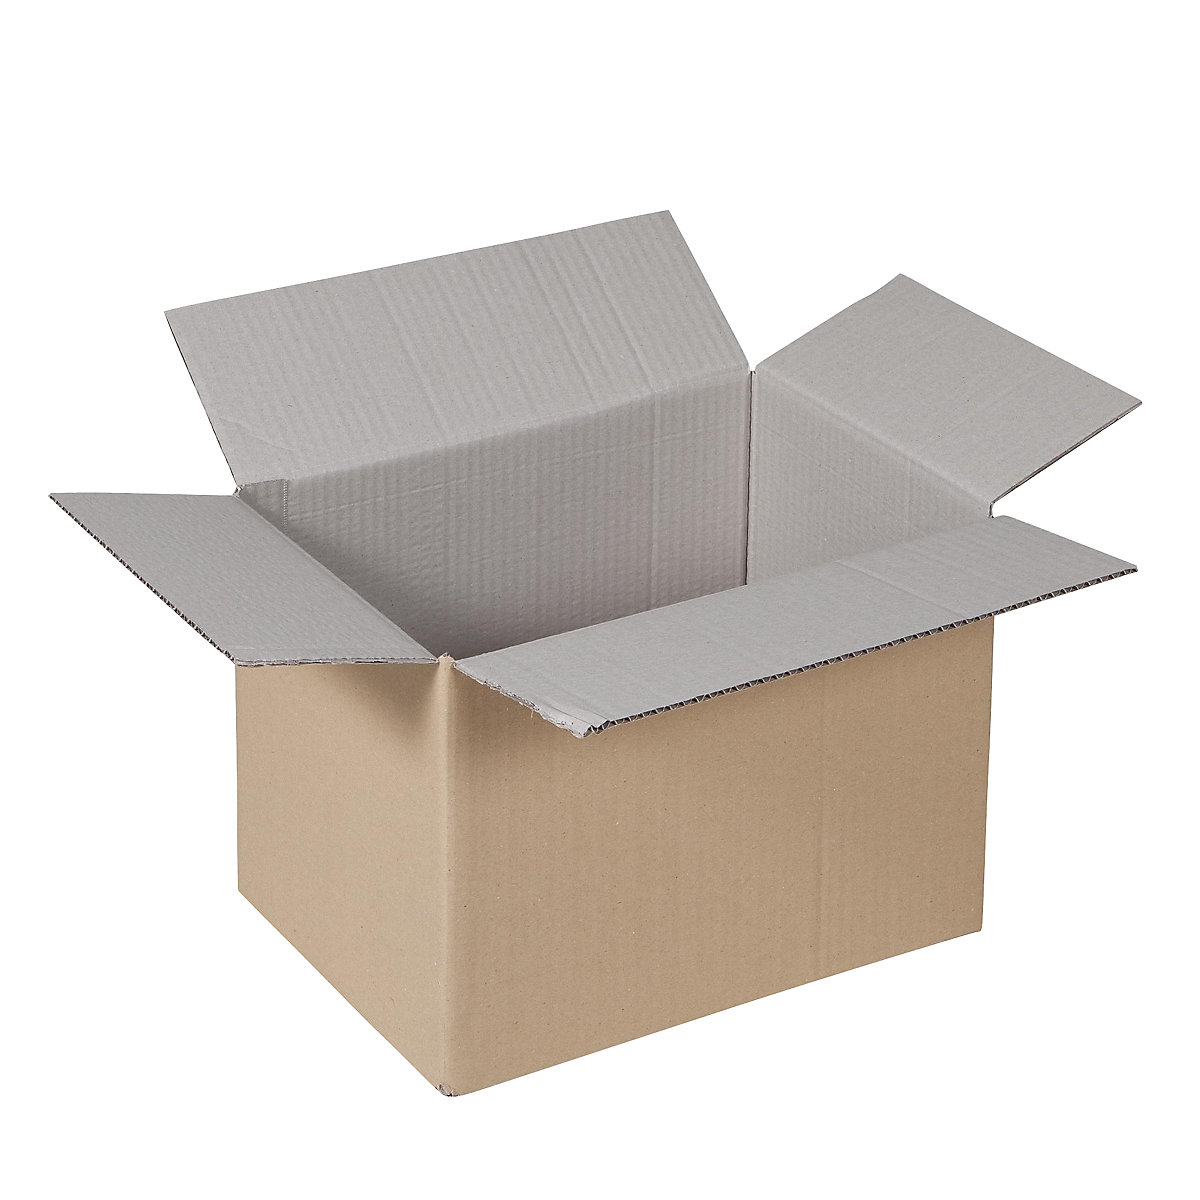 Sklopiva kartonska kutija, FEFCO 0201, od 1-valnog kartona, unutarnje dimenzije 320 x 250 x 200 mm, pak. 100 kom.-13